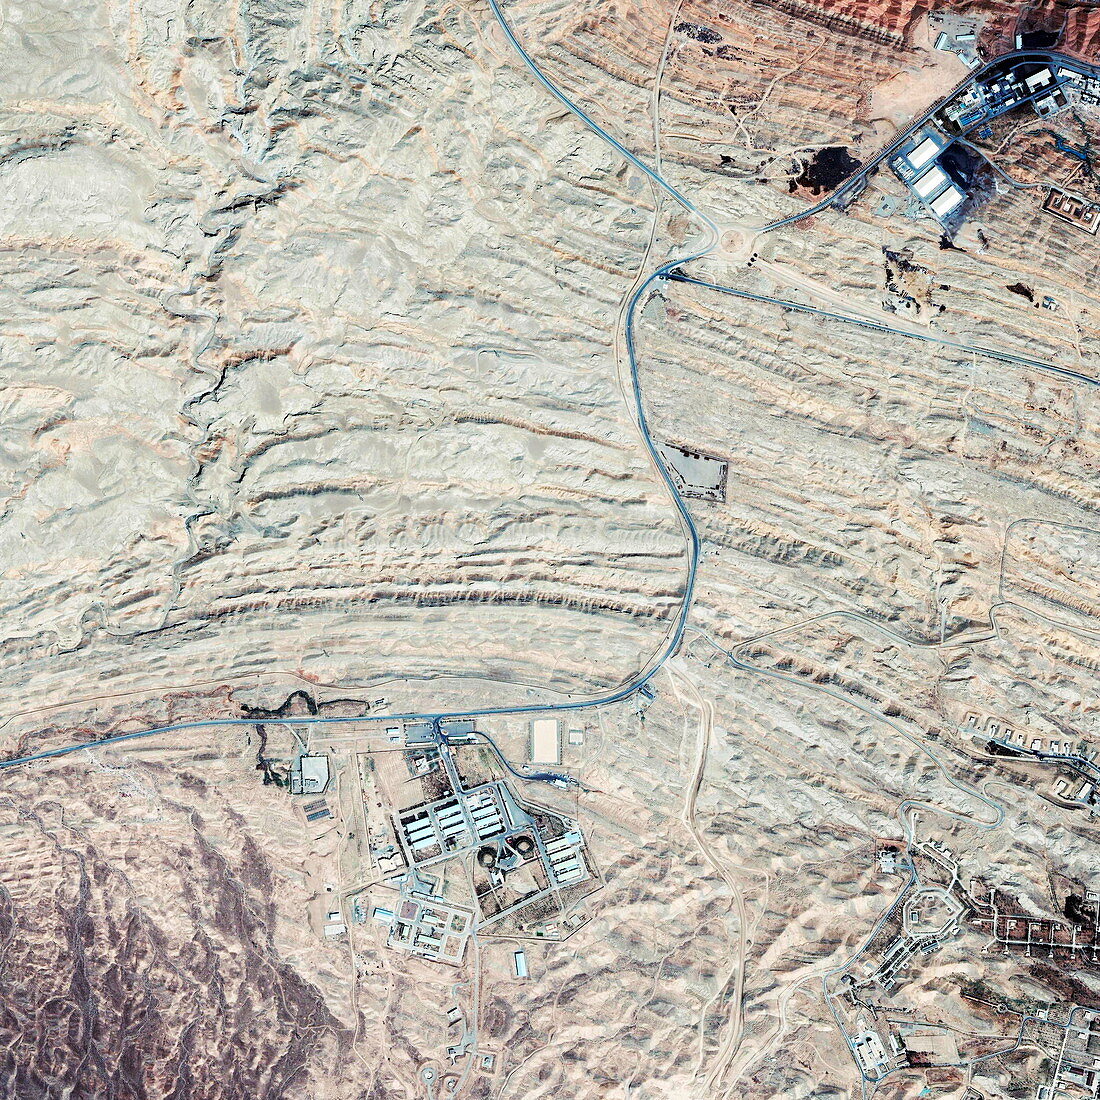 Parchin military complex,Iran